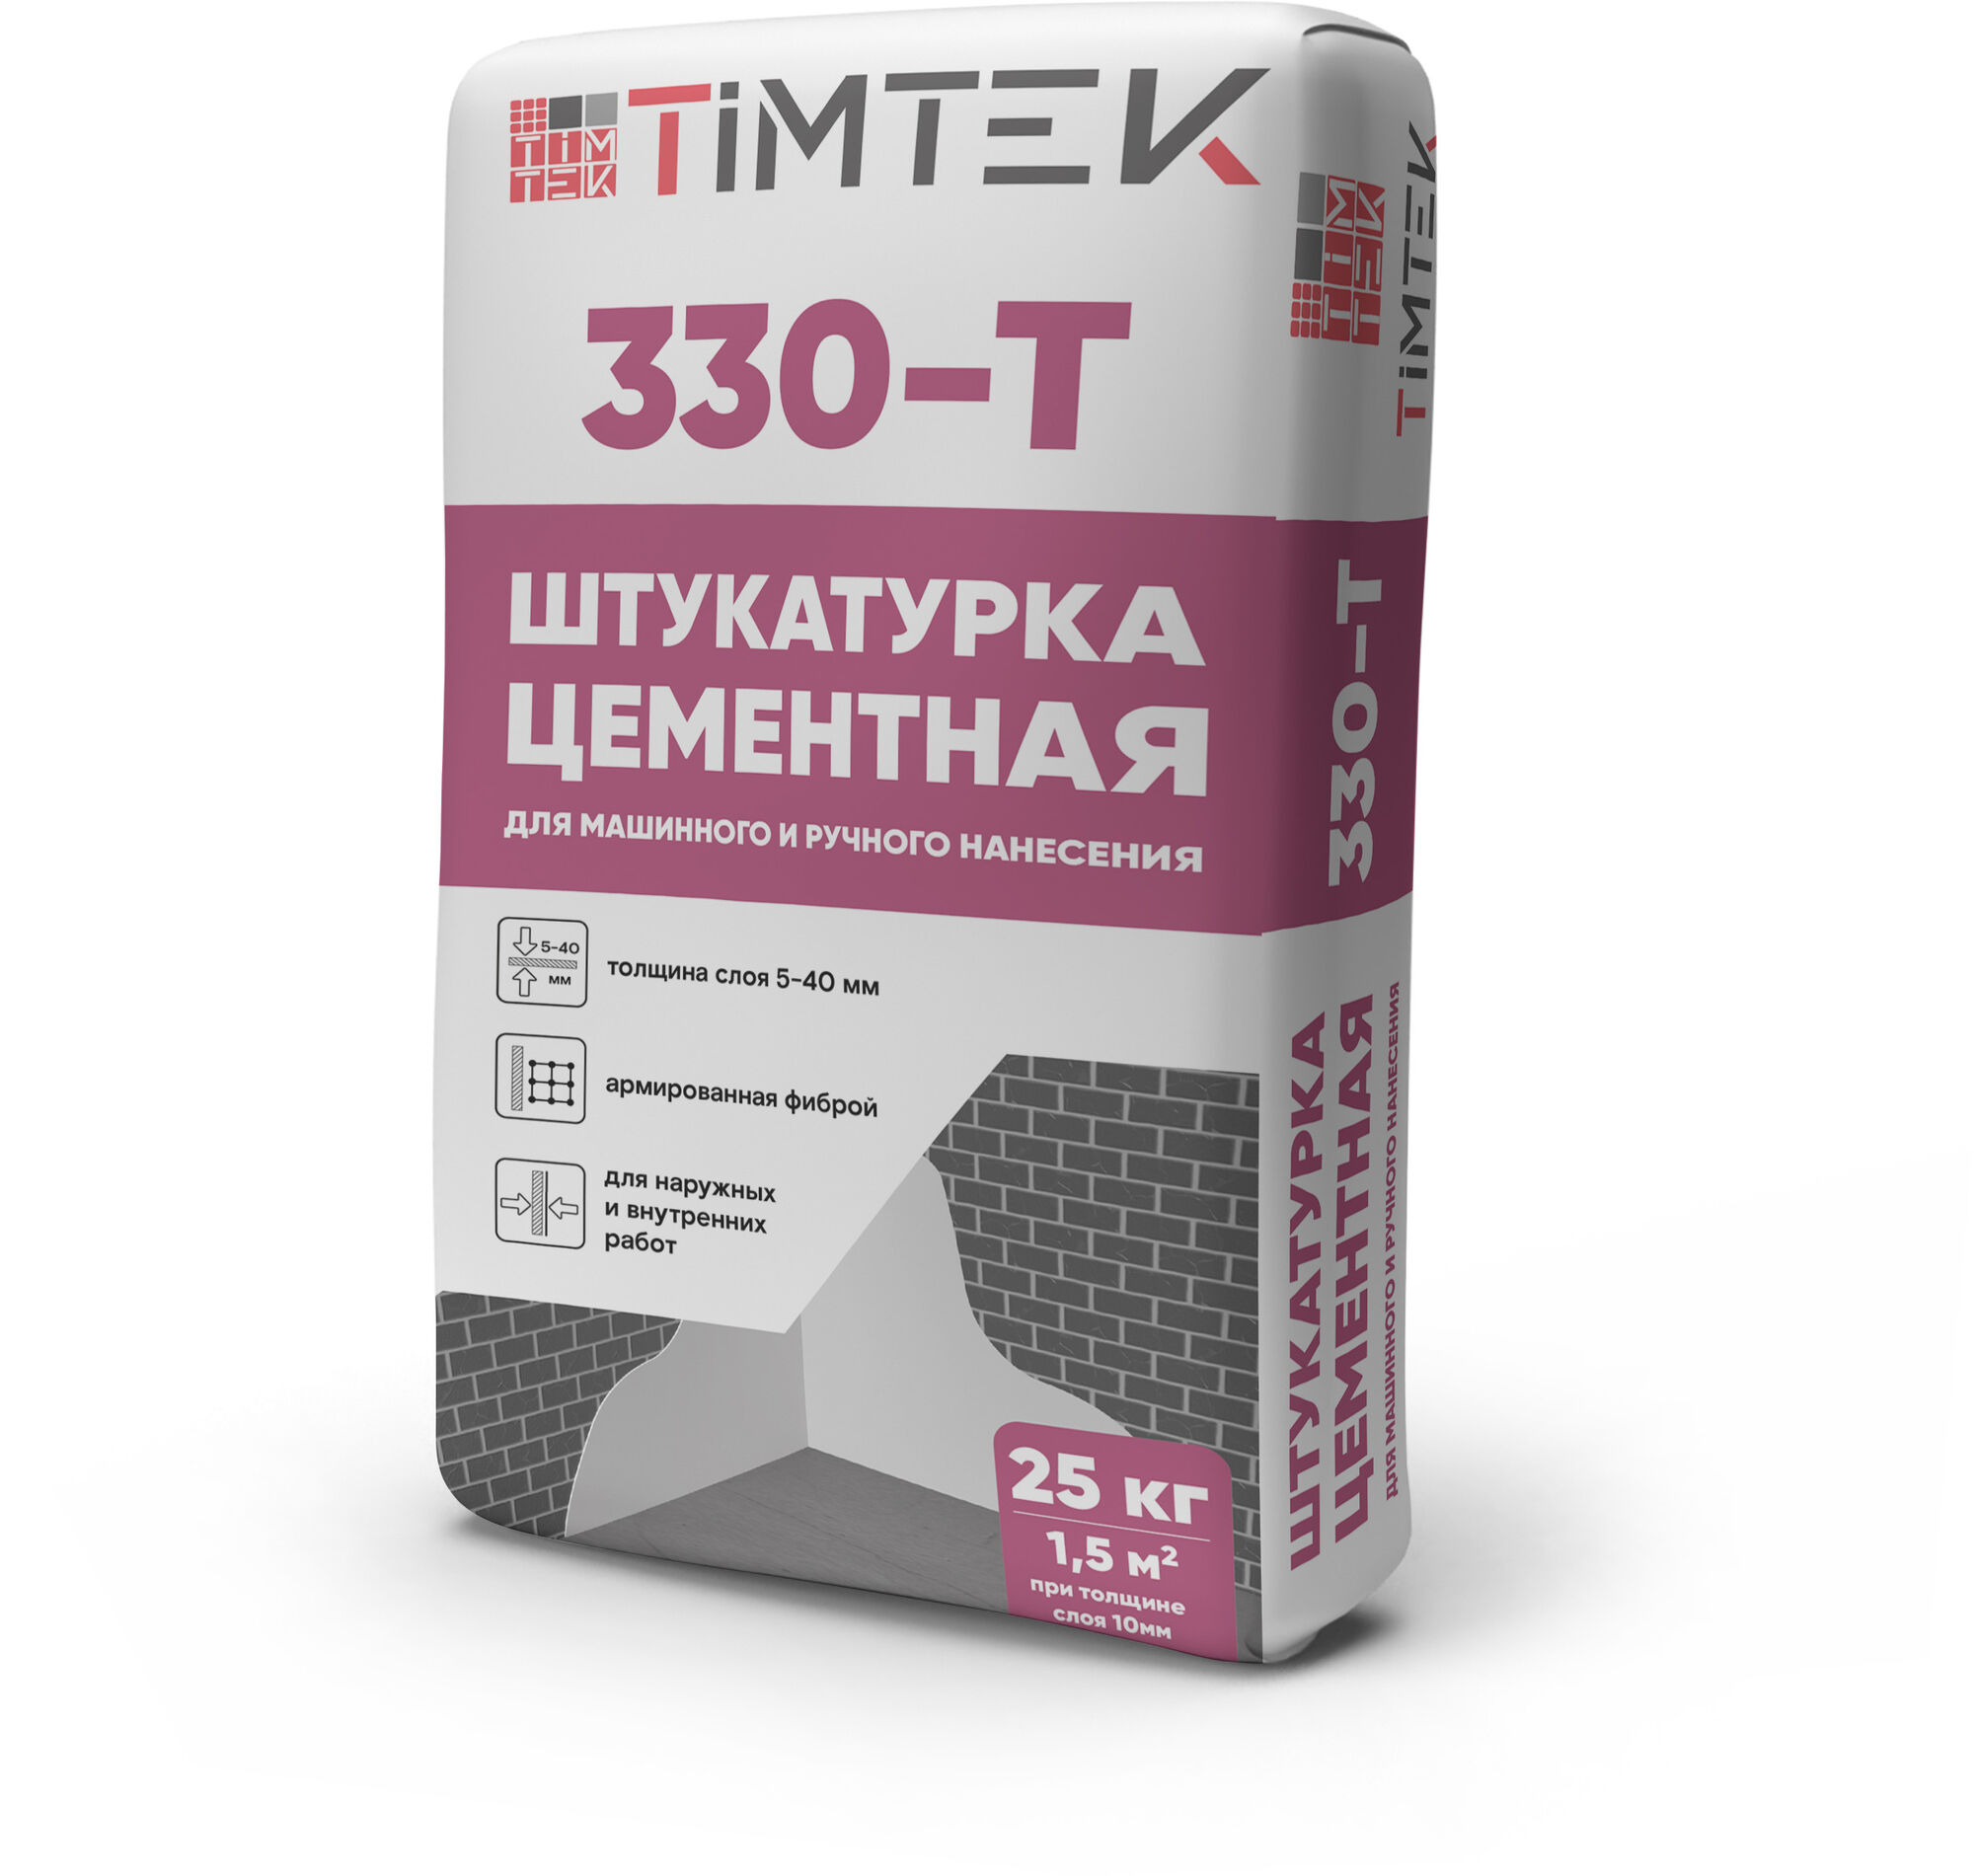 Штукатурка цементная Timtek 330-T для машинного и ручного нанесения 5-40 мм 25 кг 54 шт/пал.